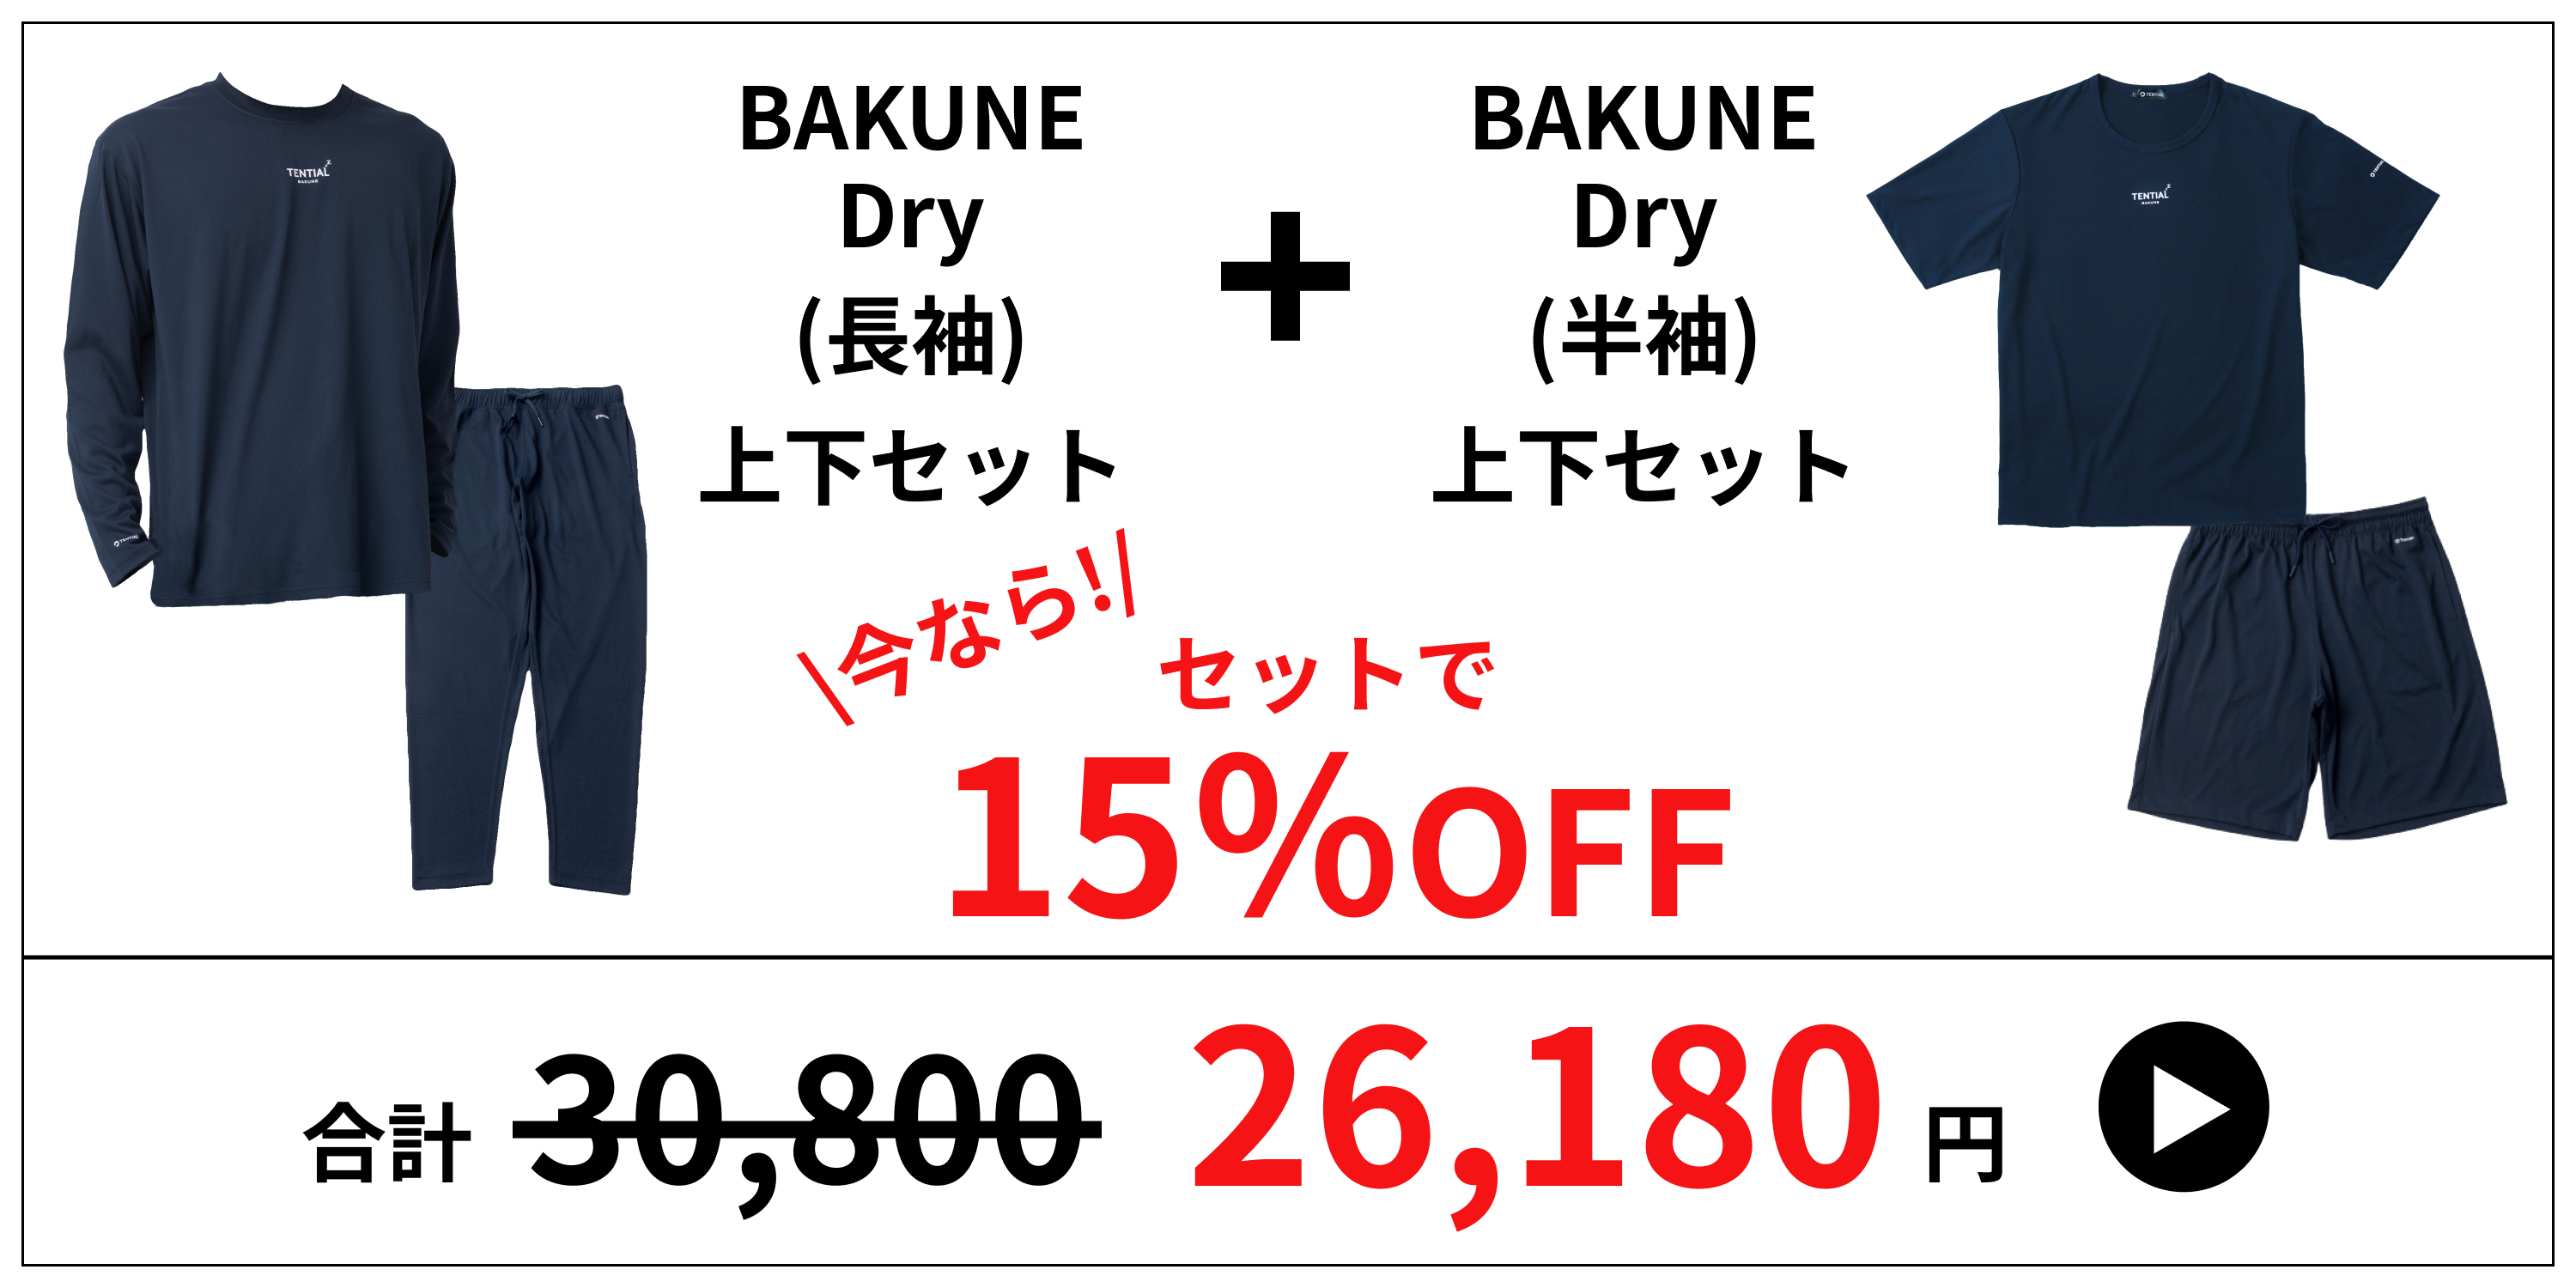 BAKUNE Dry（半袖）上下セット 未使用 suitit.com